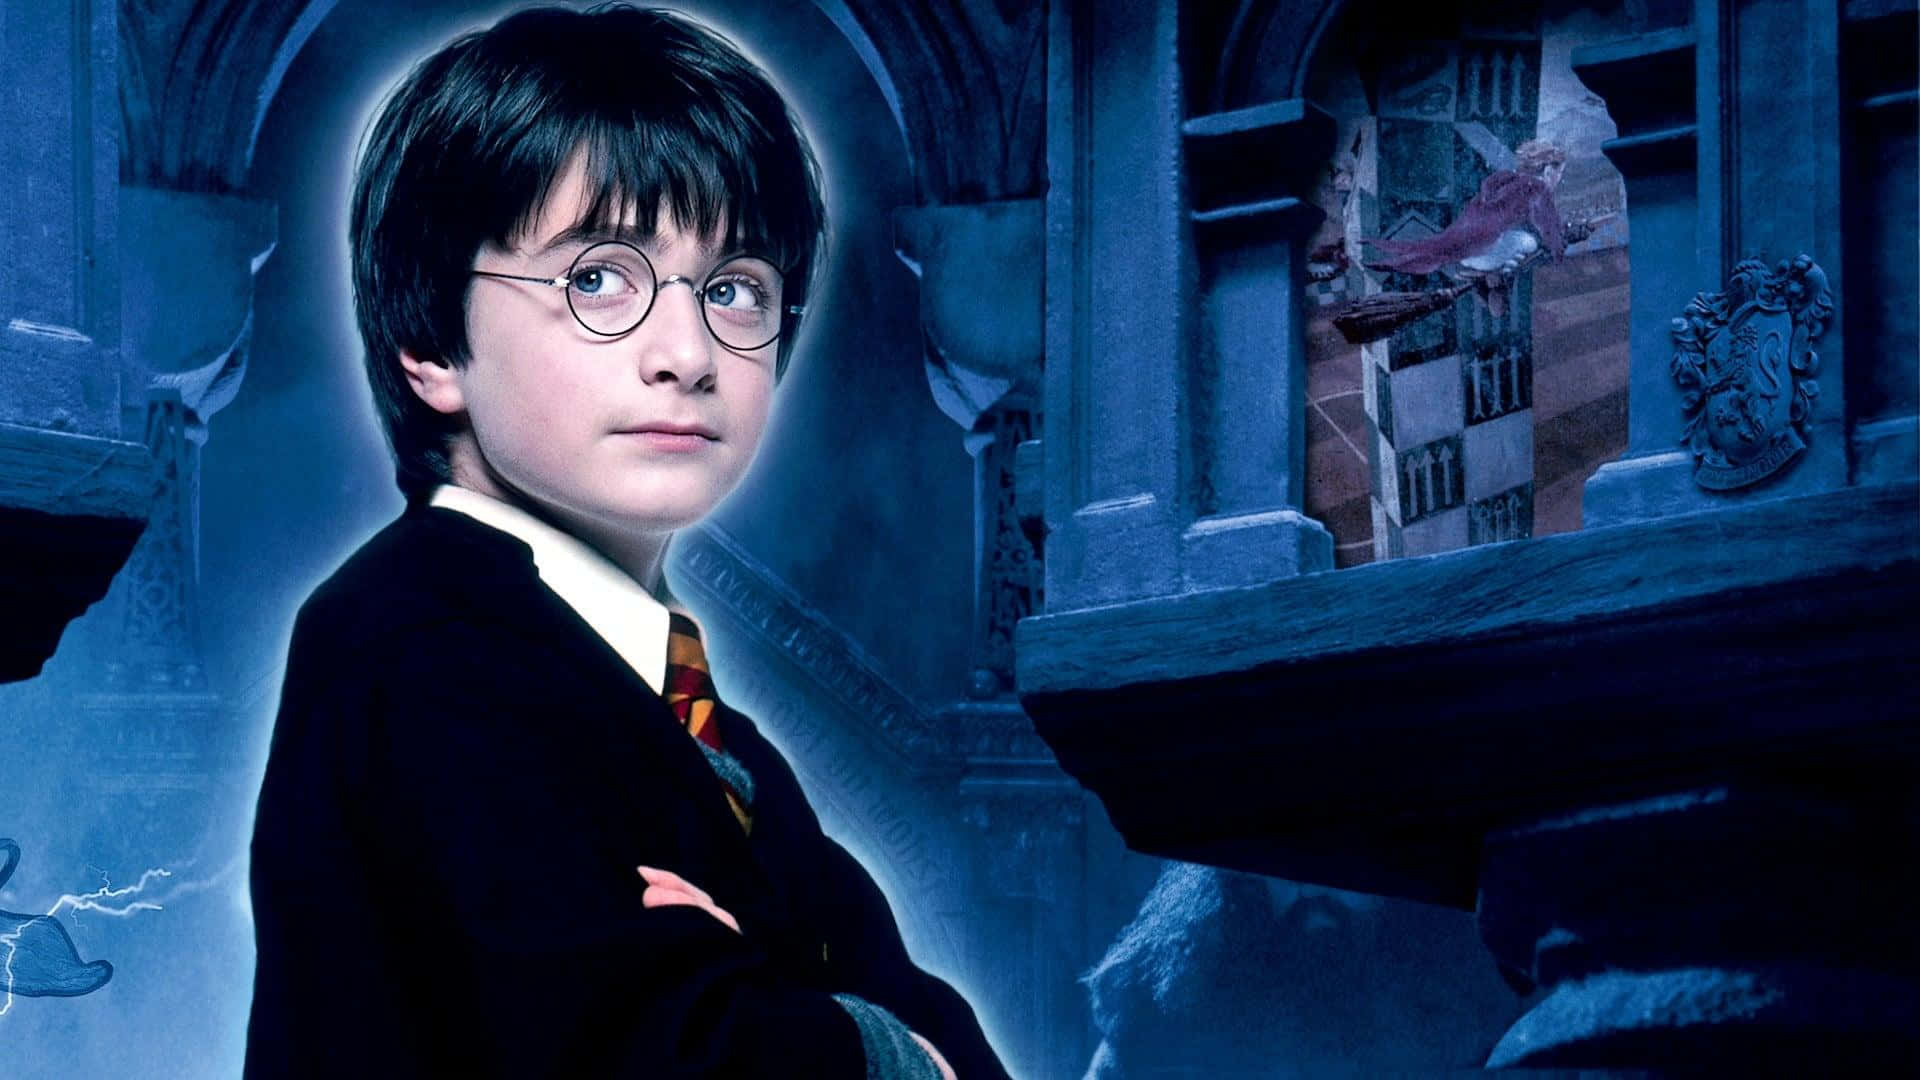 Profilbildav Harry Potter